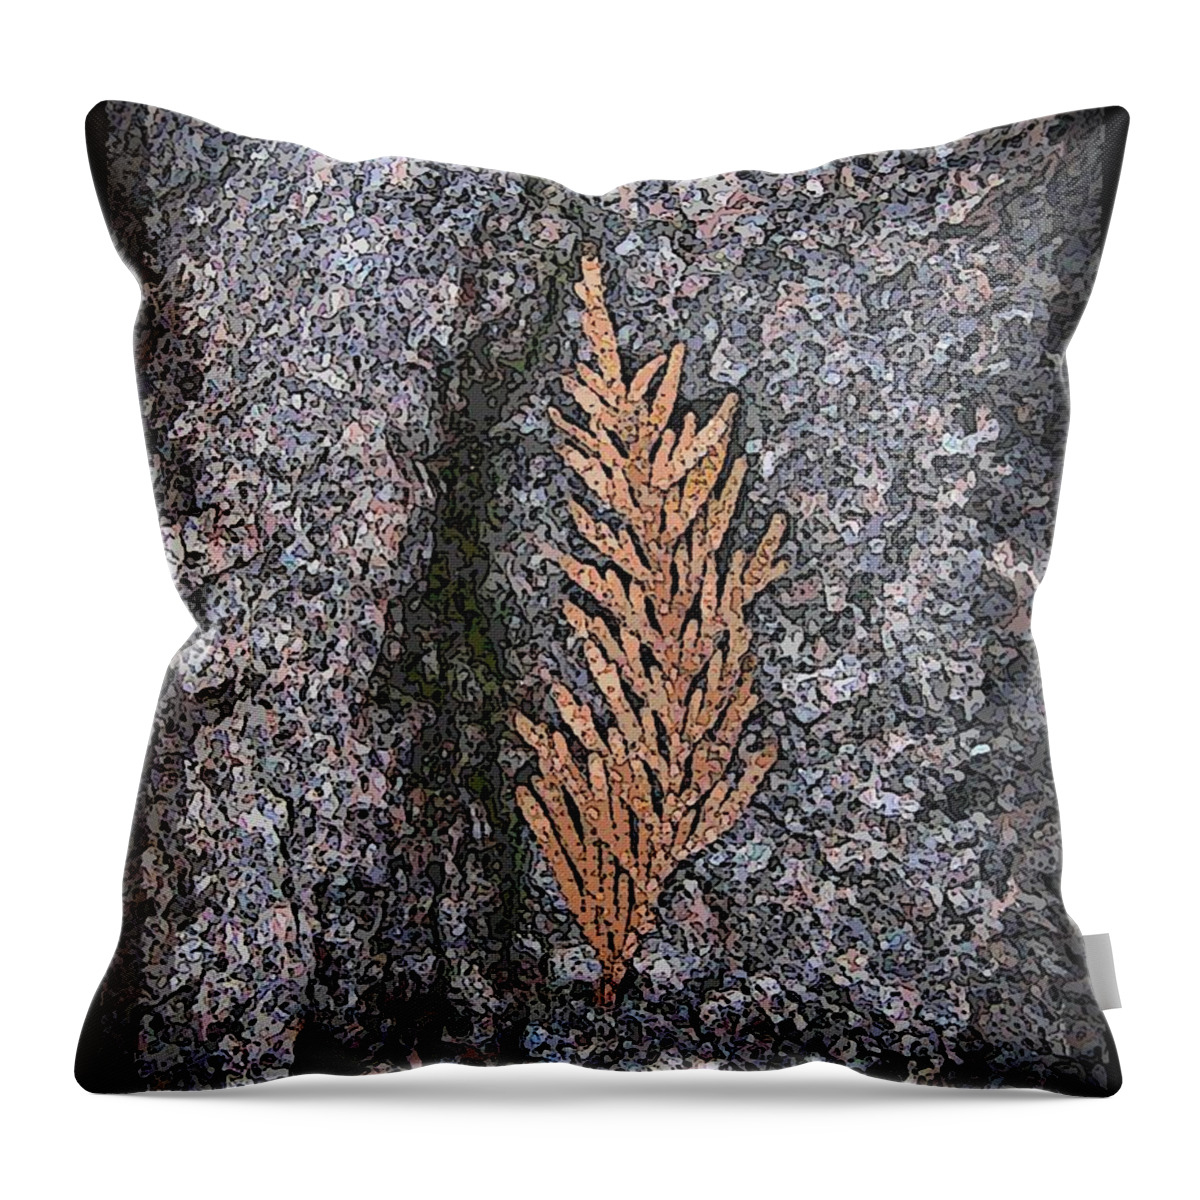 Cedar Throw Pillow featuring the digital art Cedar On Granite by Tim Allen